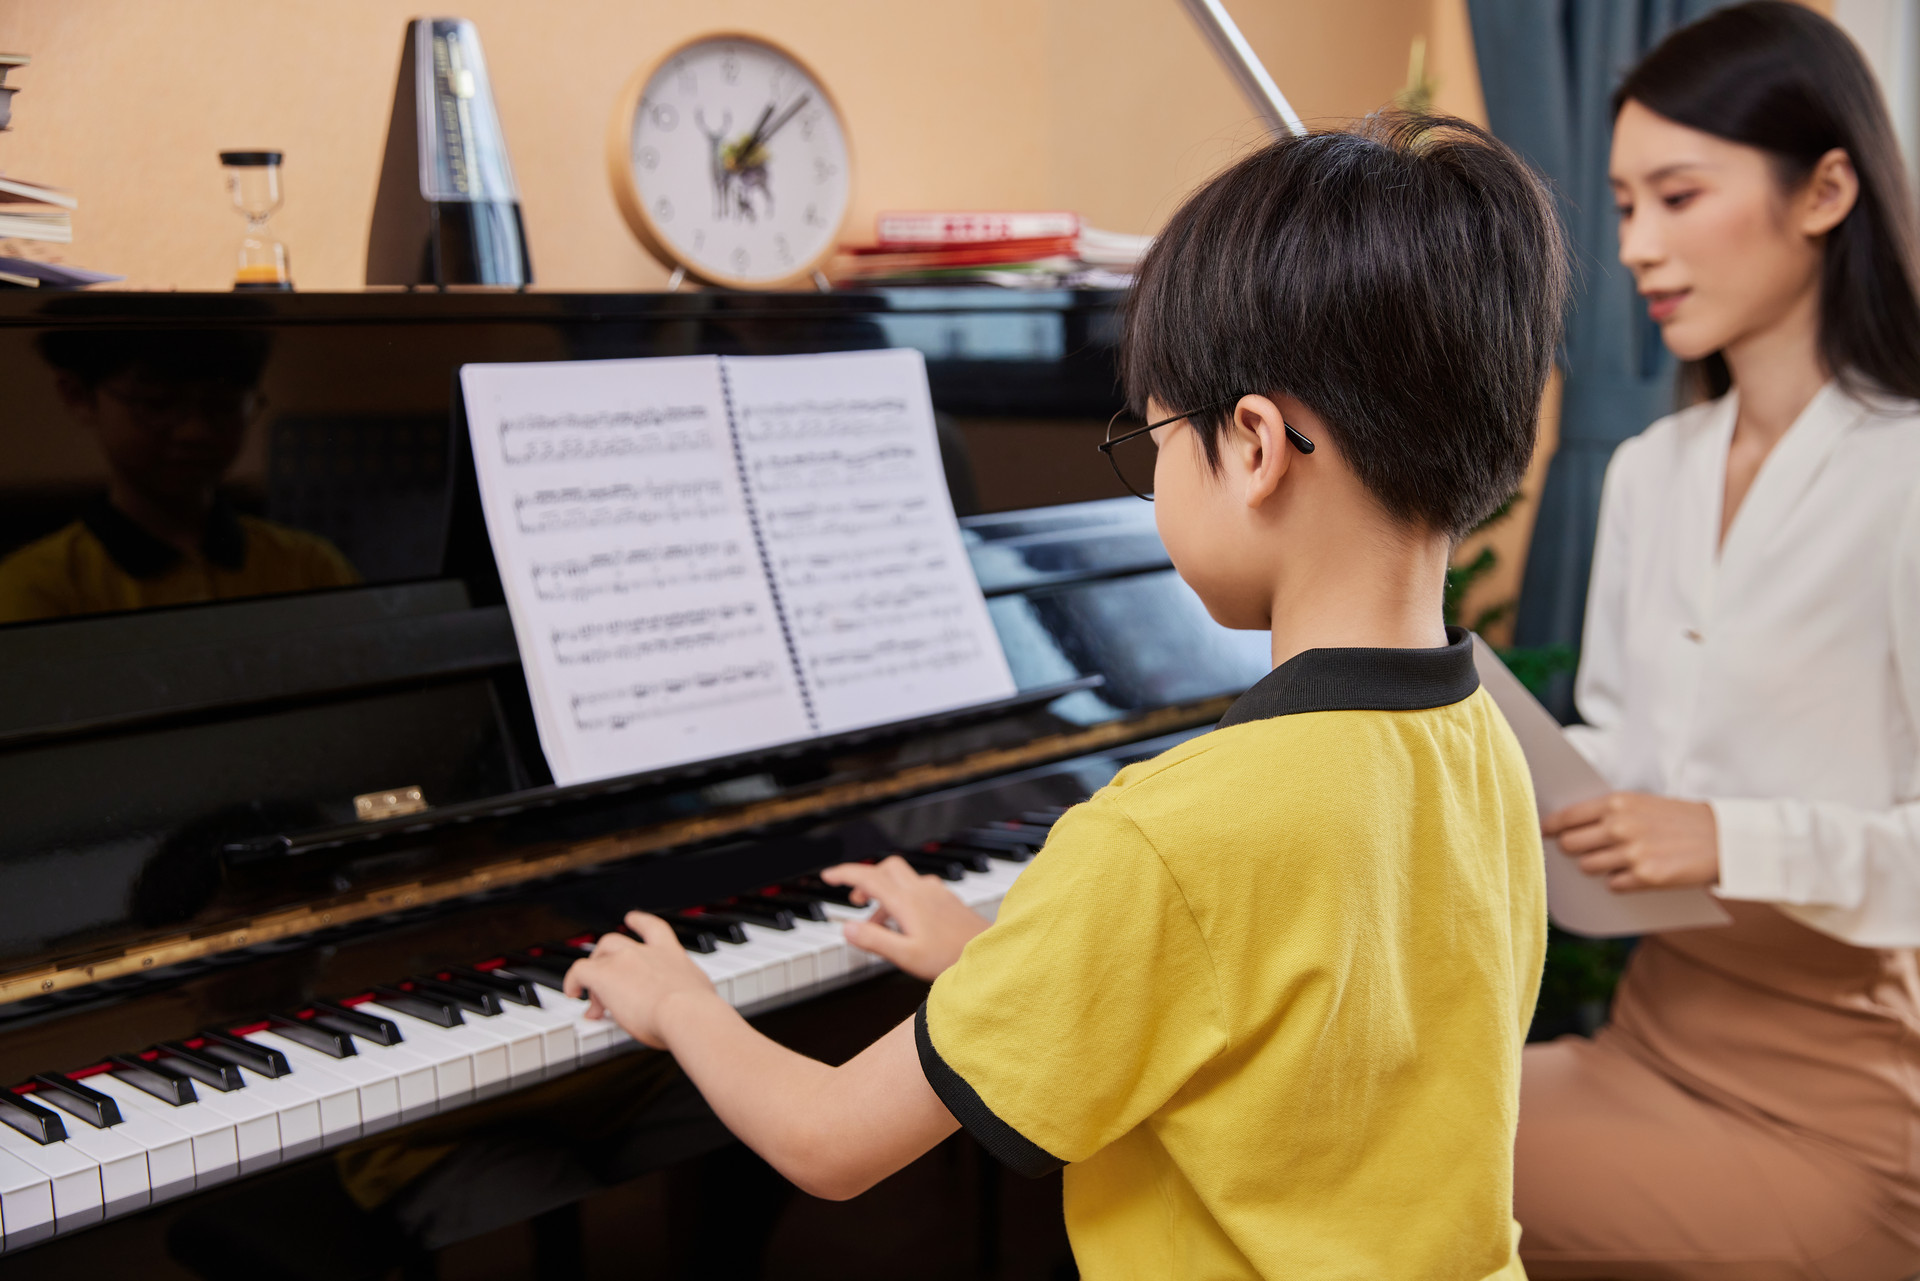 小孩子学钢琴可能会遇到的问题